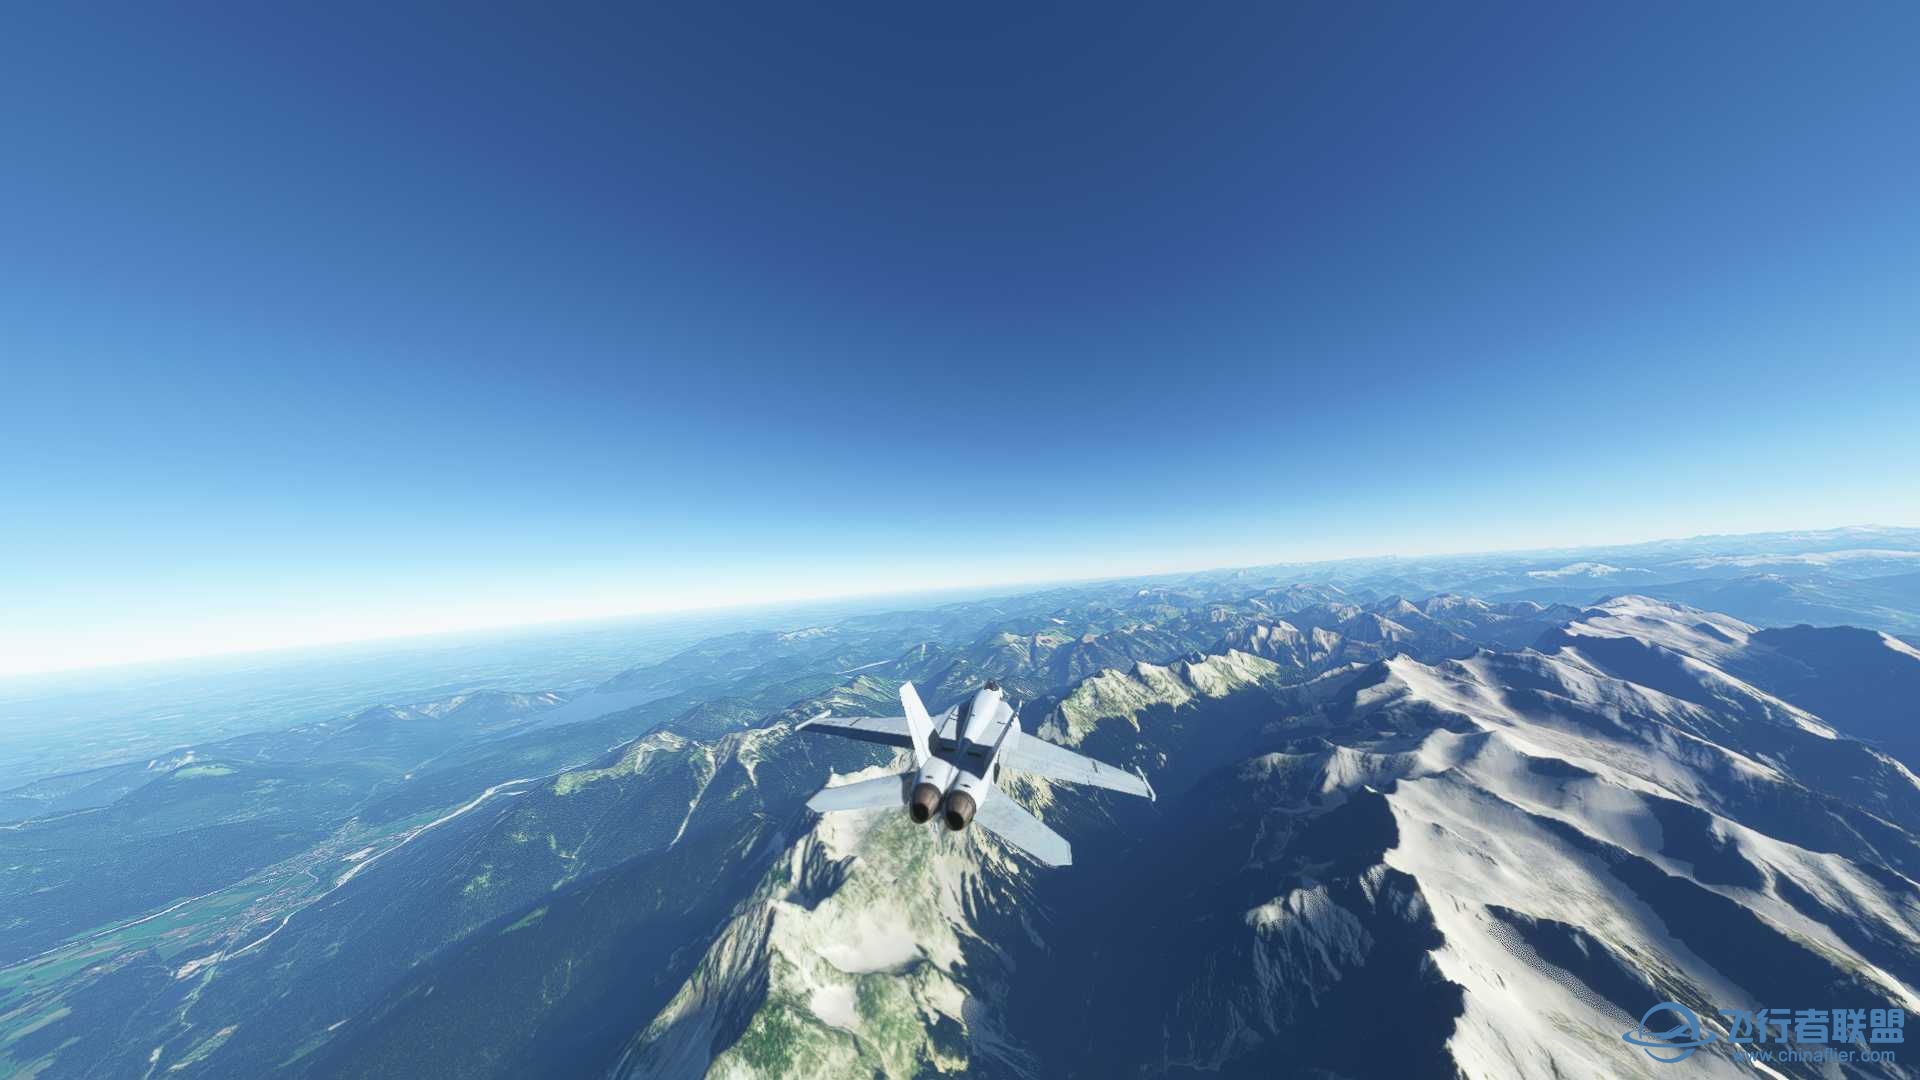 阿尔卑斯山脉附近飞行无法进行游戏-8498 